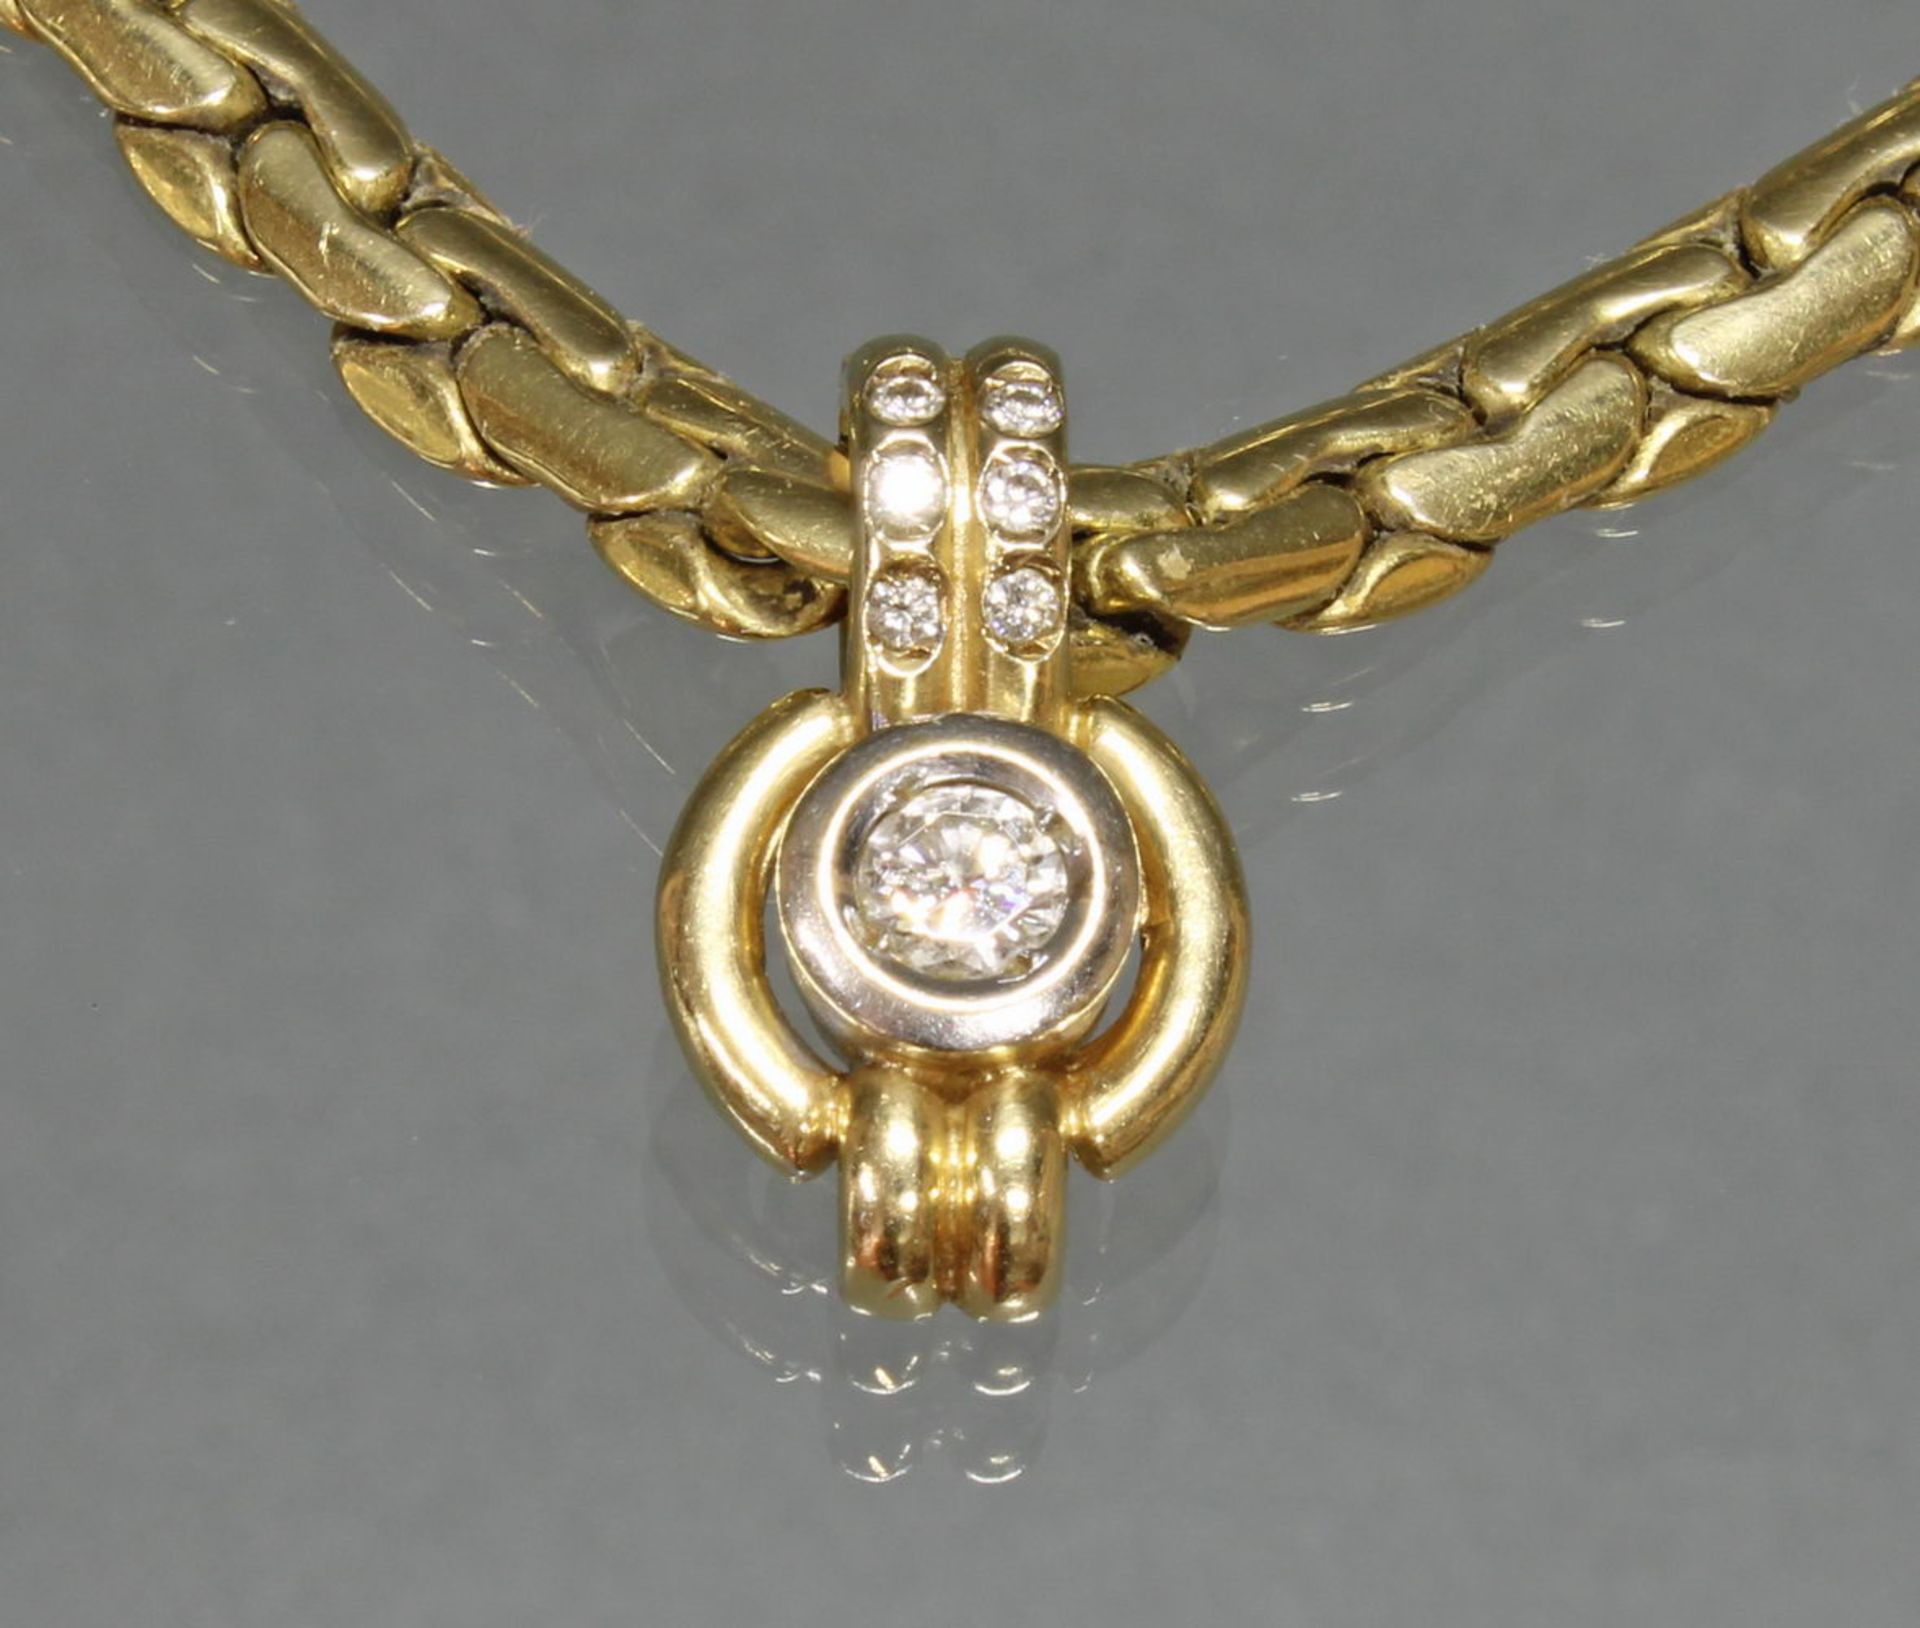 Anhängerclip, WG/GG 585, 1 Brillant ca. 0.25 ct., 6 kleine Besatzdiamanten, an Collierkette, GG 58 - Image 2 of 2